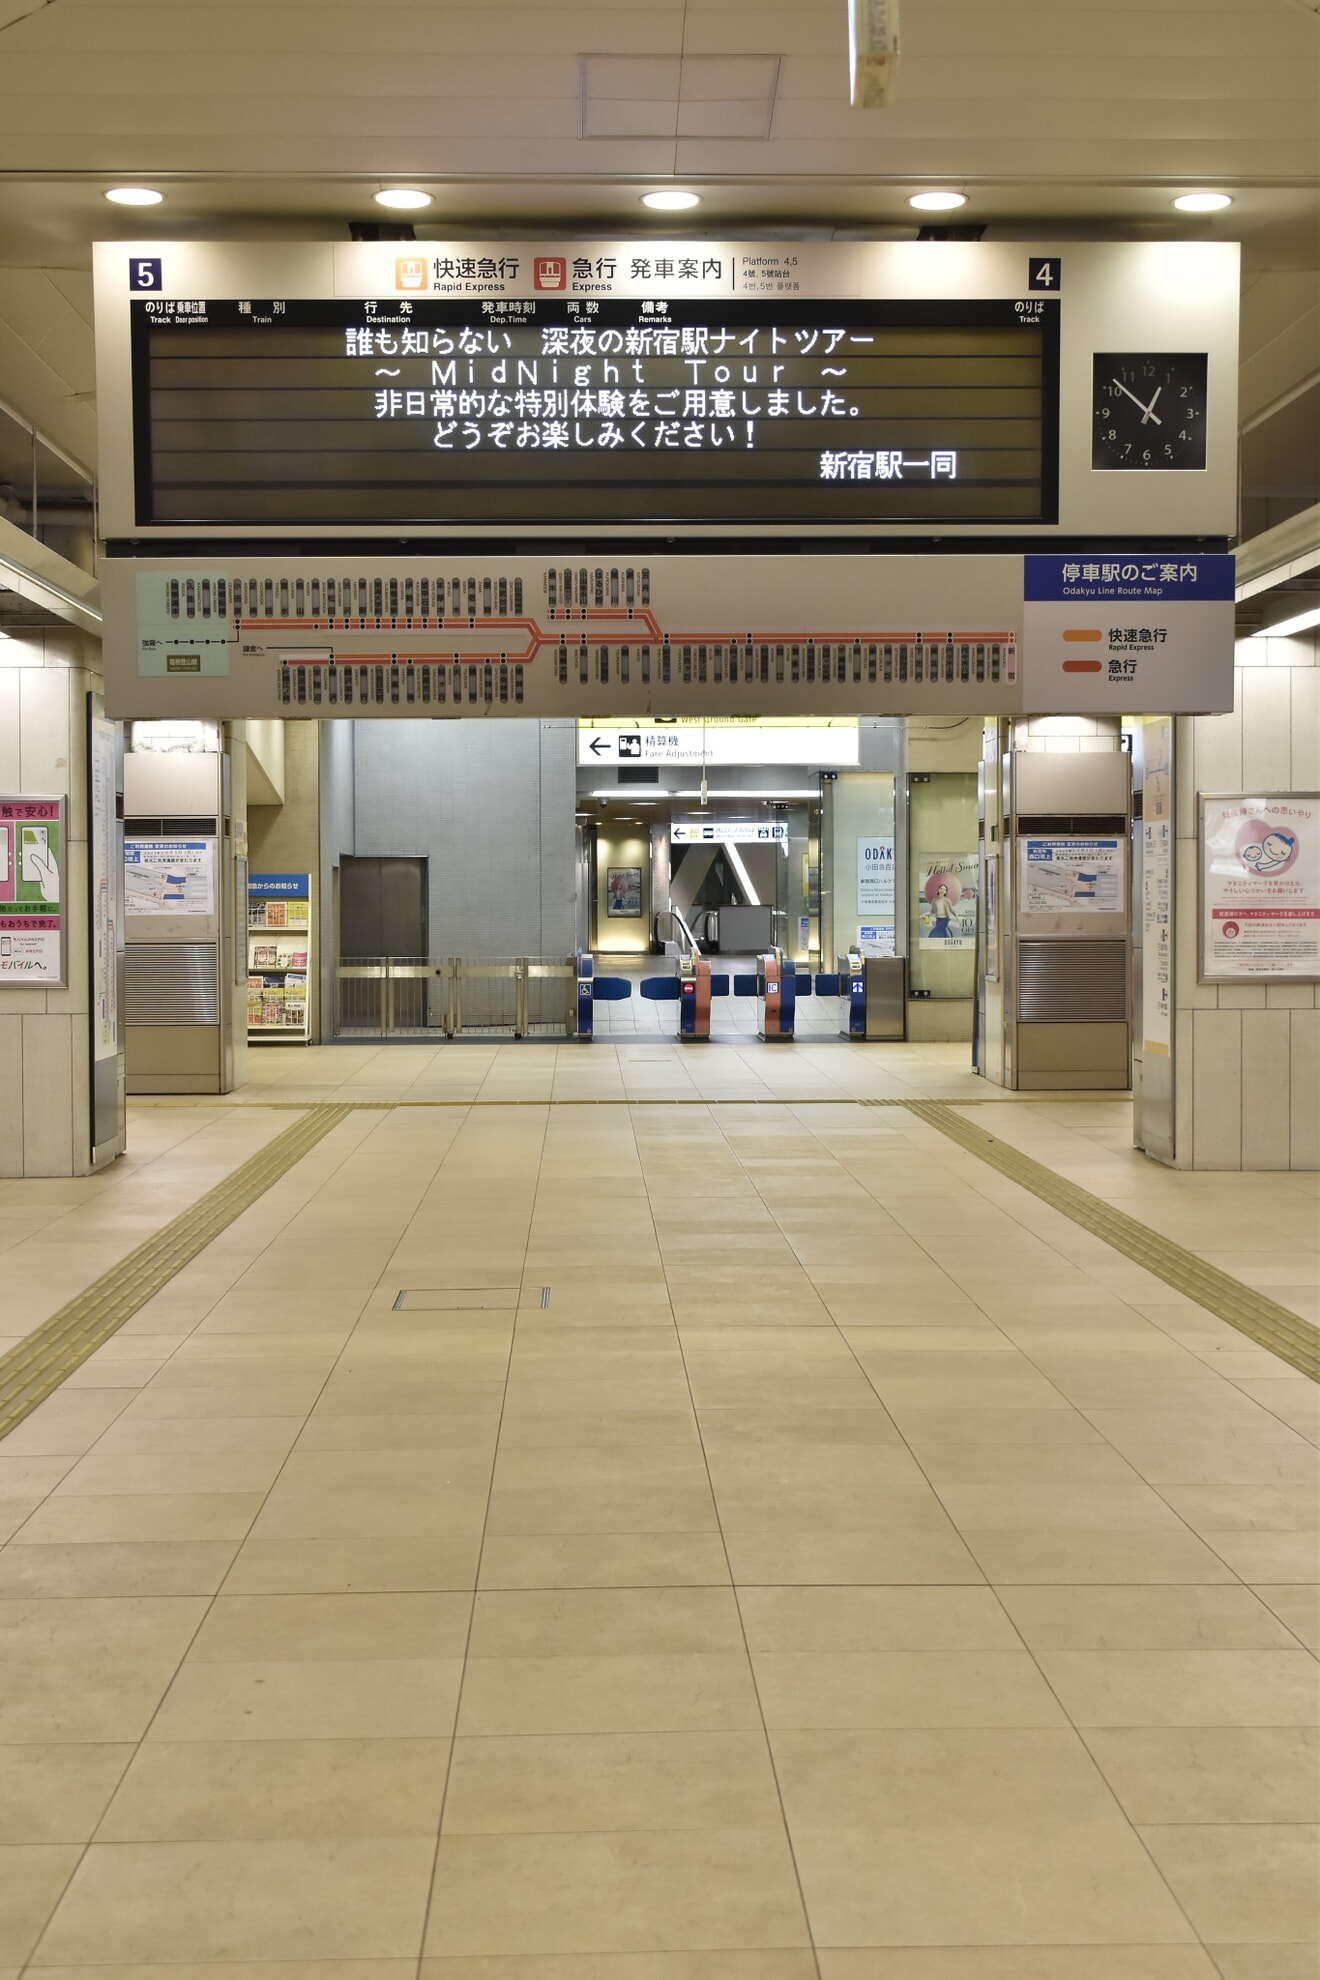 【小田急】「誰も知らない深夜の新宿駅ナイトツアー」の拡大写真